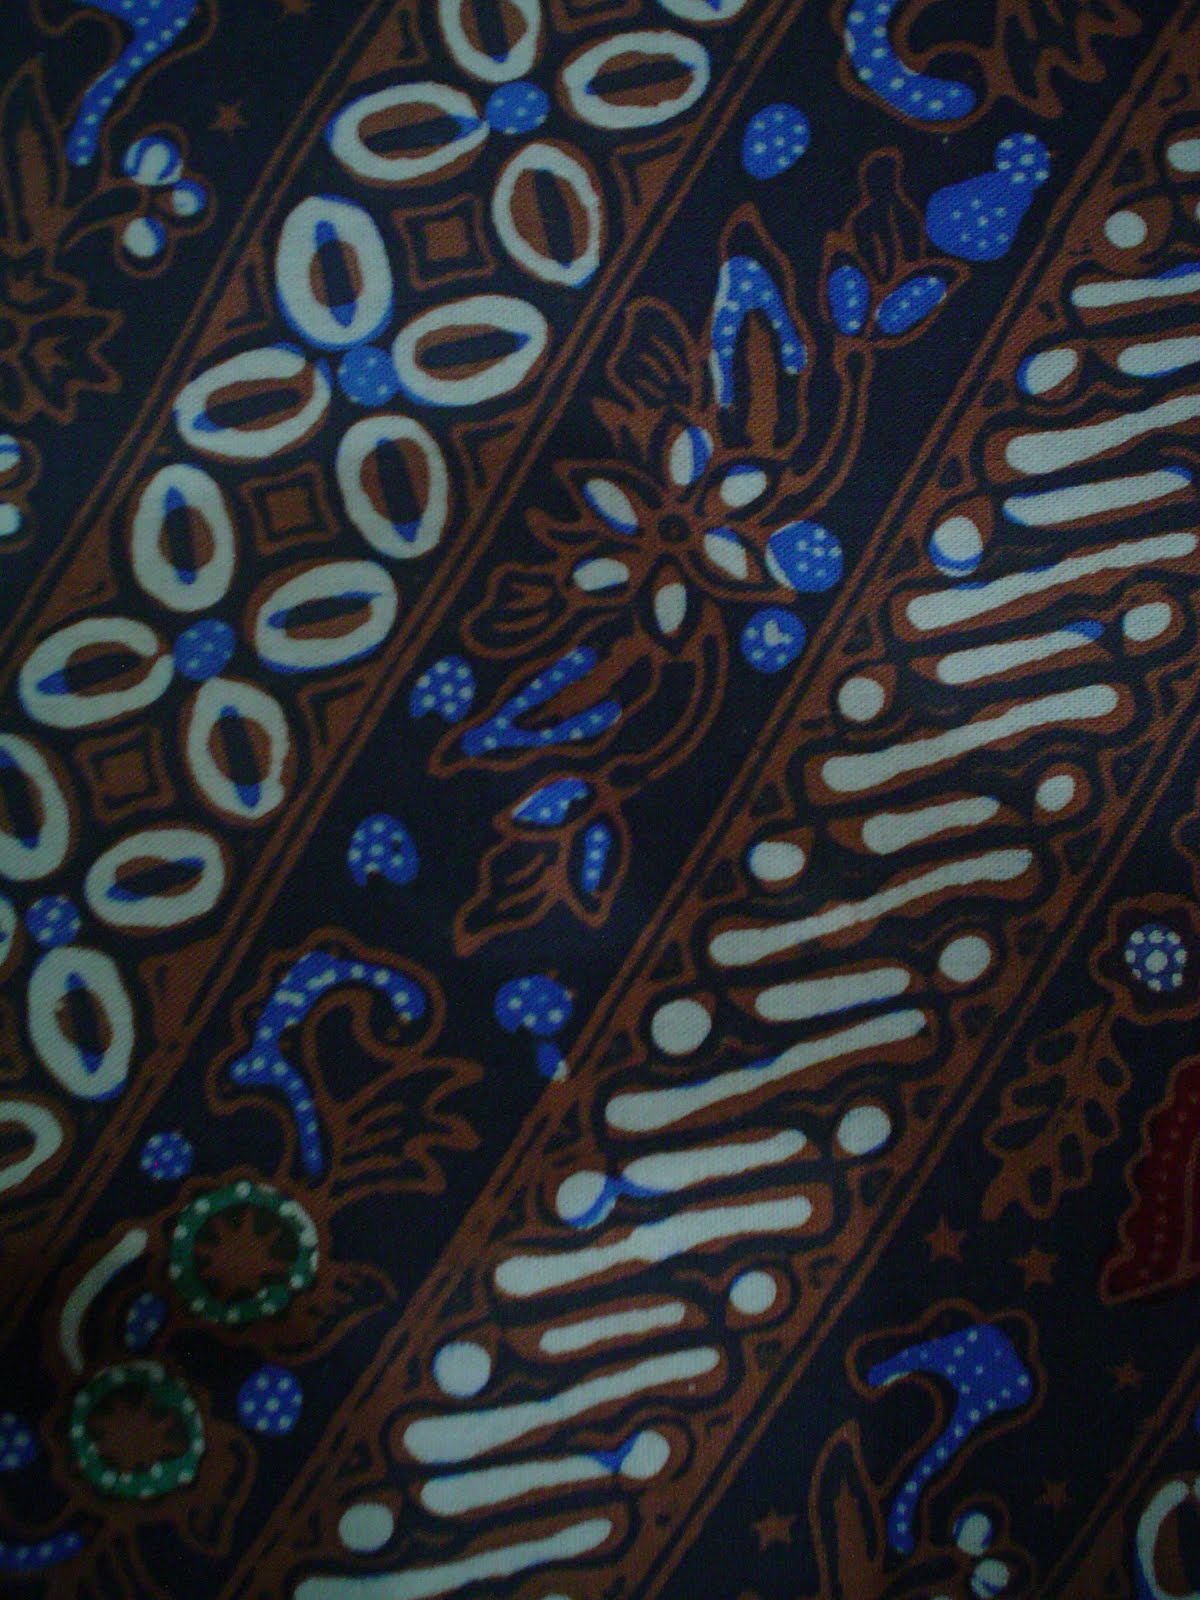 BATIK&SOUVENIR IVY: Macam-macam bahan batik (cap)